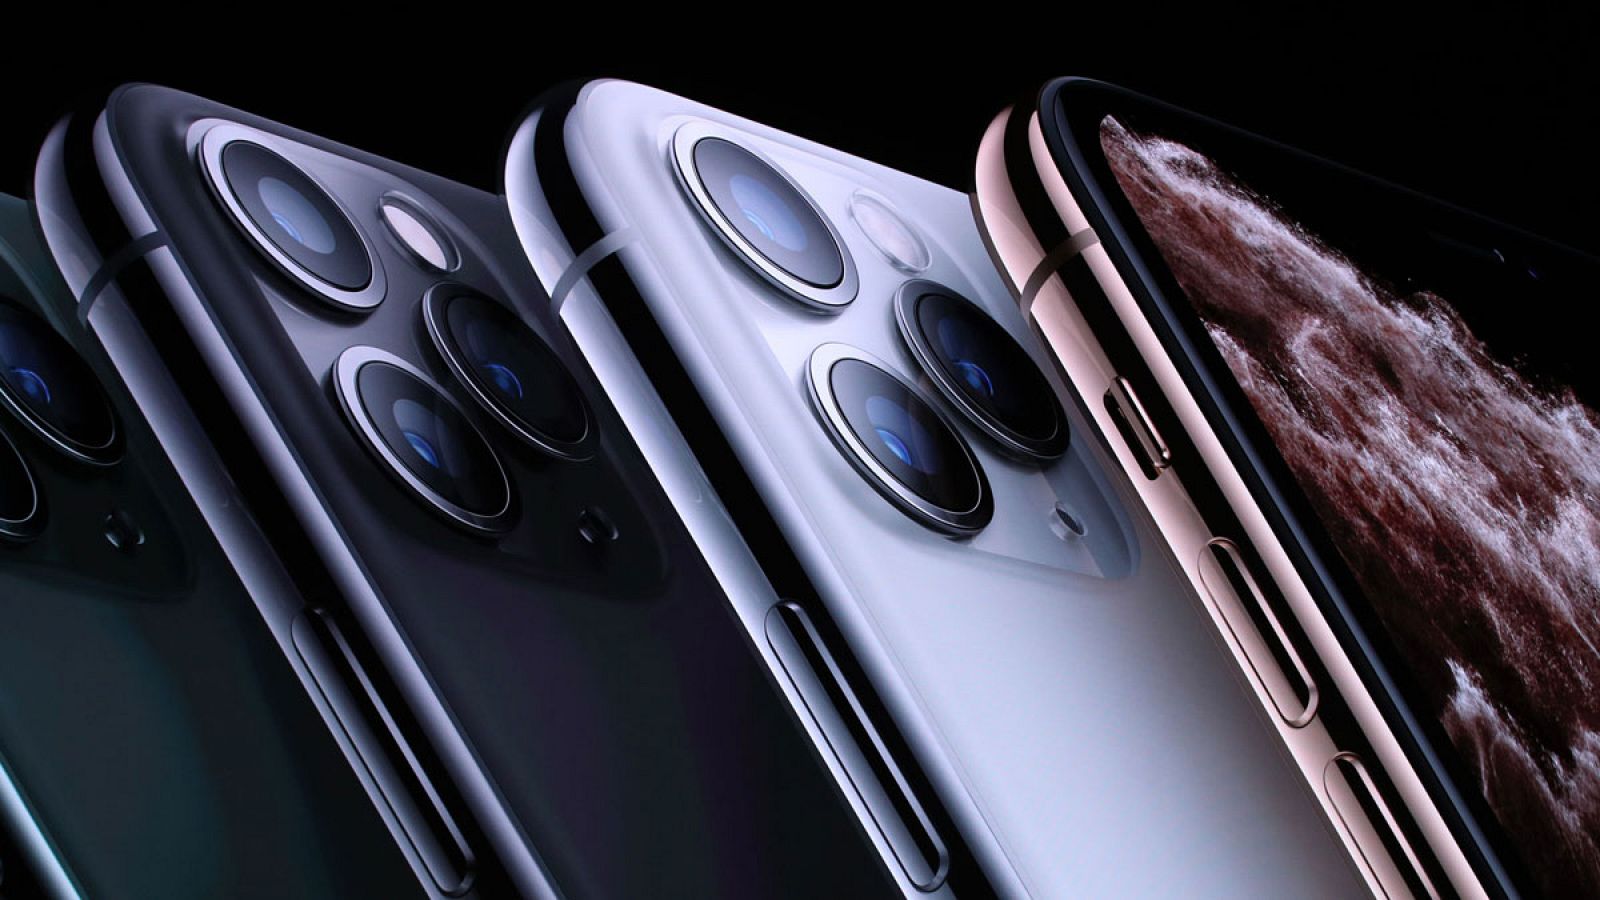 Los modelos iPhone 11 Pro y iPhone 11 Pro Max incluyen por primera vez tres cámaras traseras.